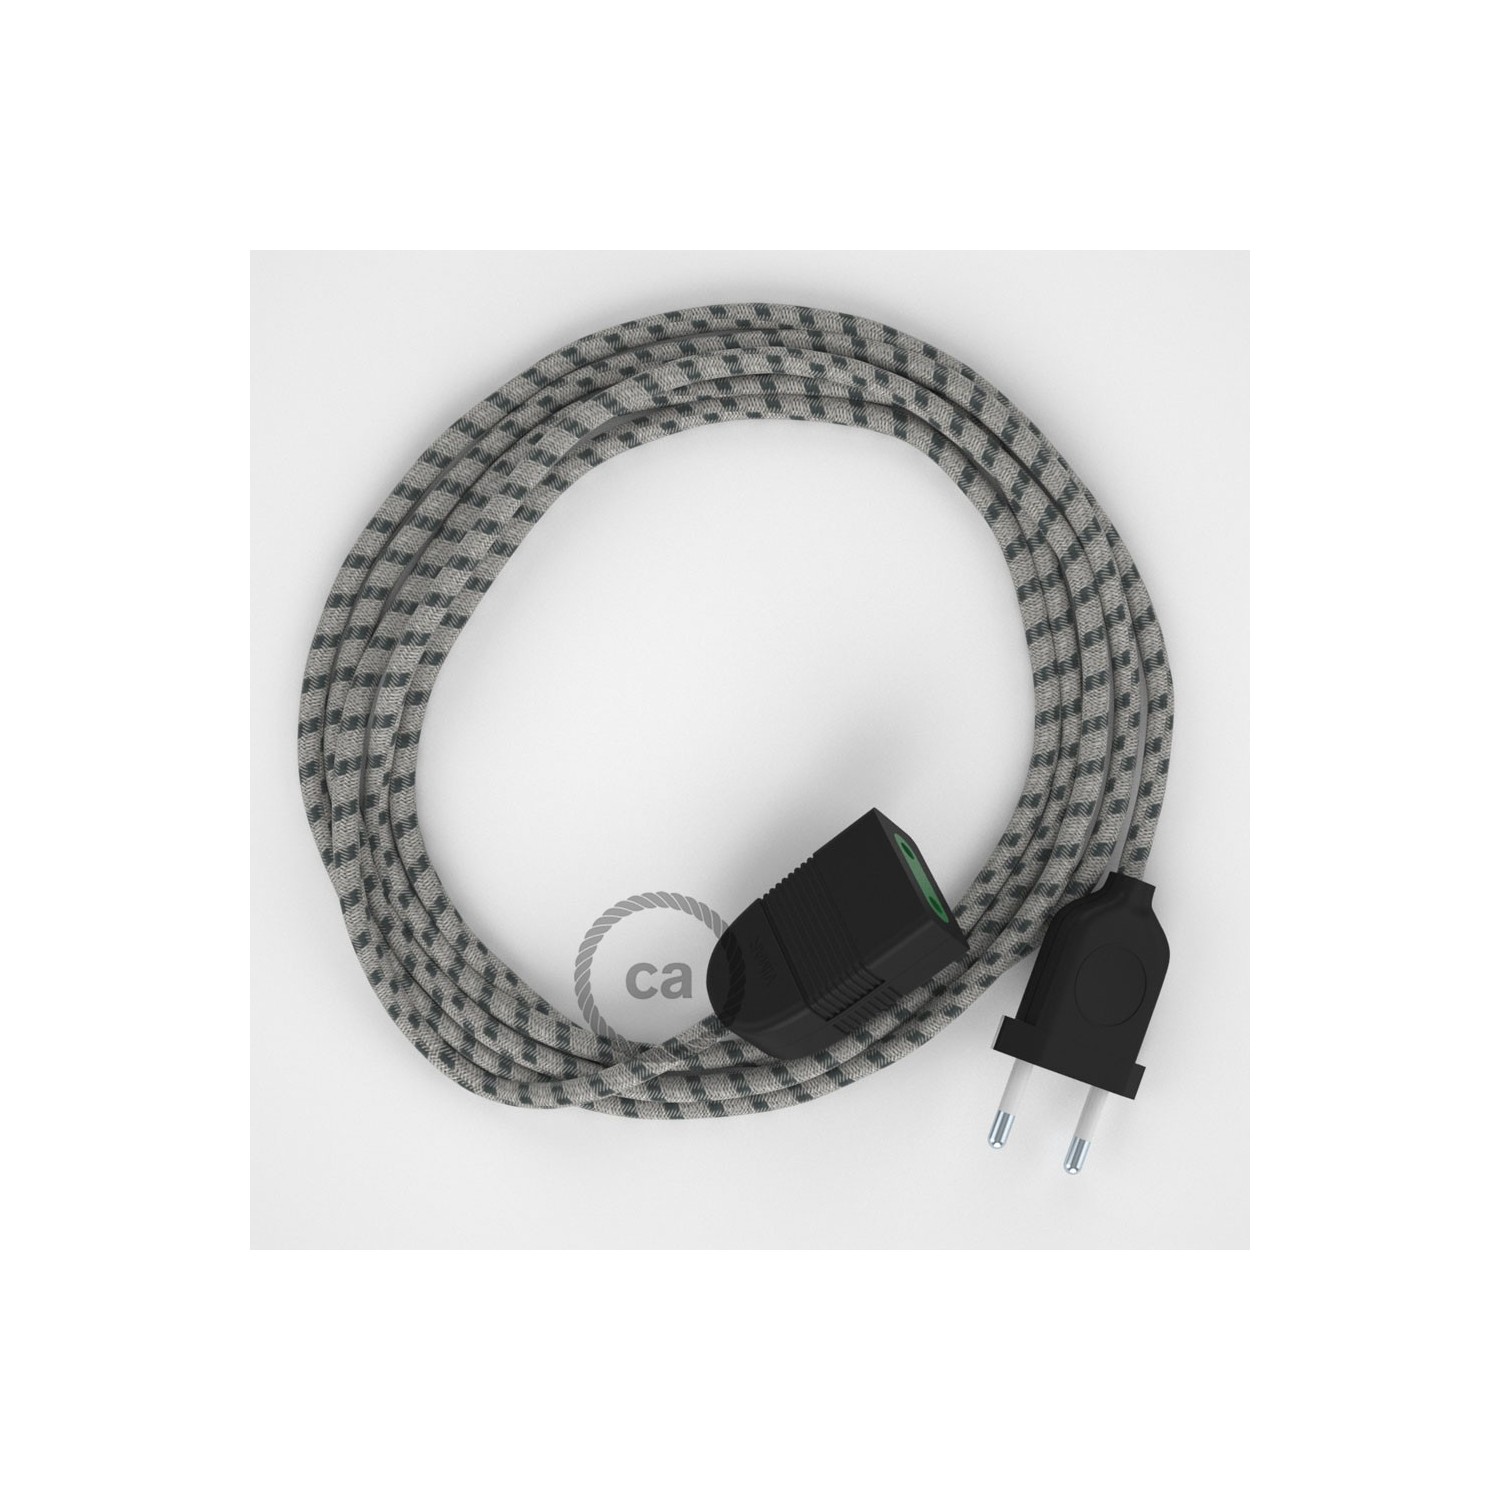 Rallonge électrique avec câble textile RD54 Coton et Lin Naturel Stripes Anthracite 2P 10A Made in Italy.